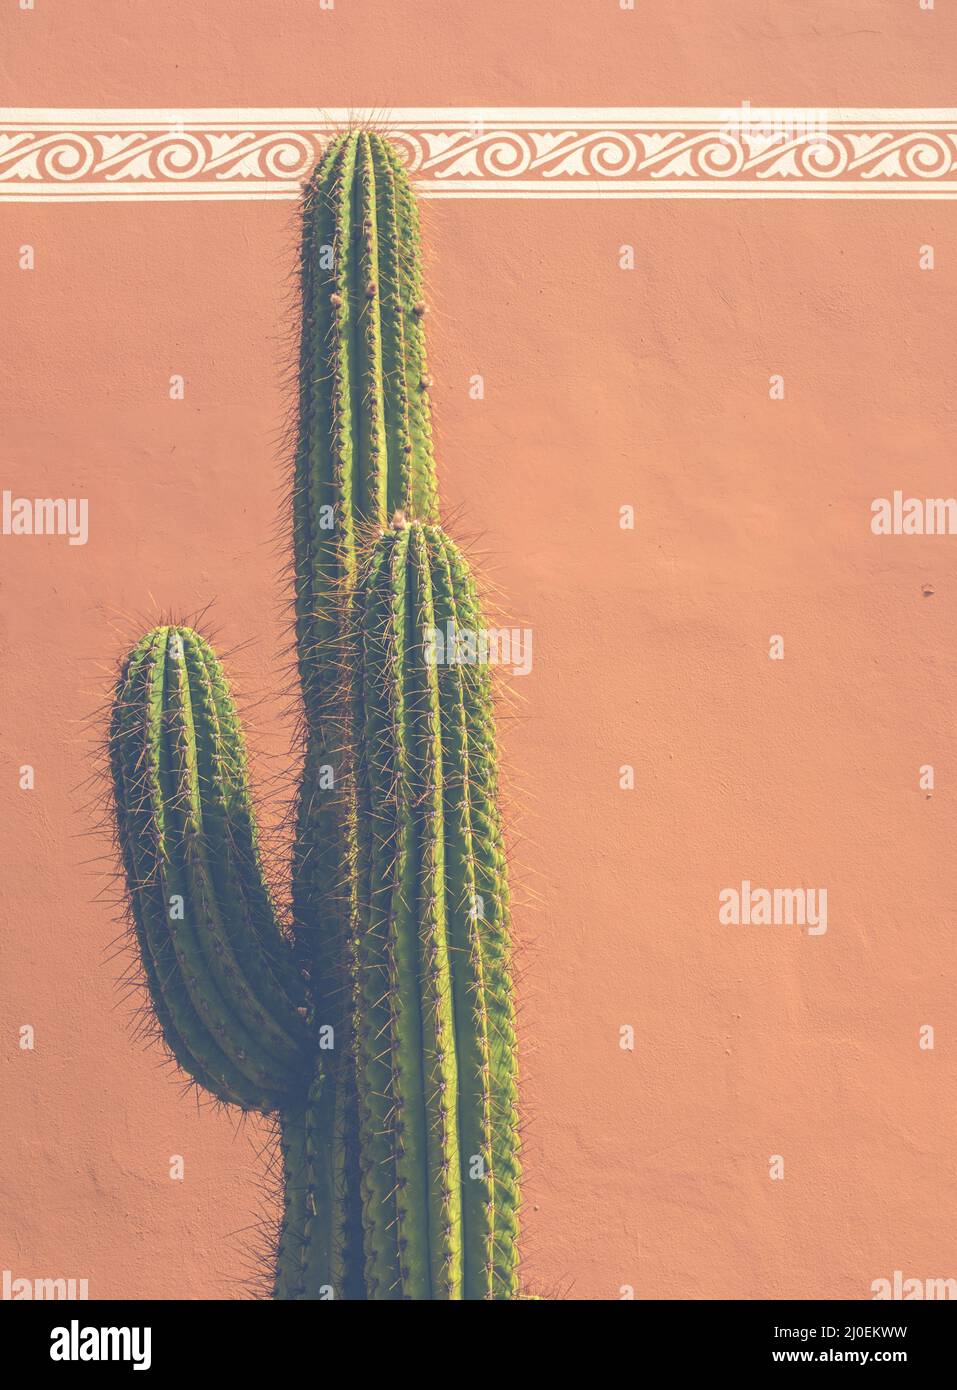 Detalle de cactus del sudoeste de EE.UU Foto de stock